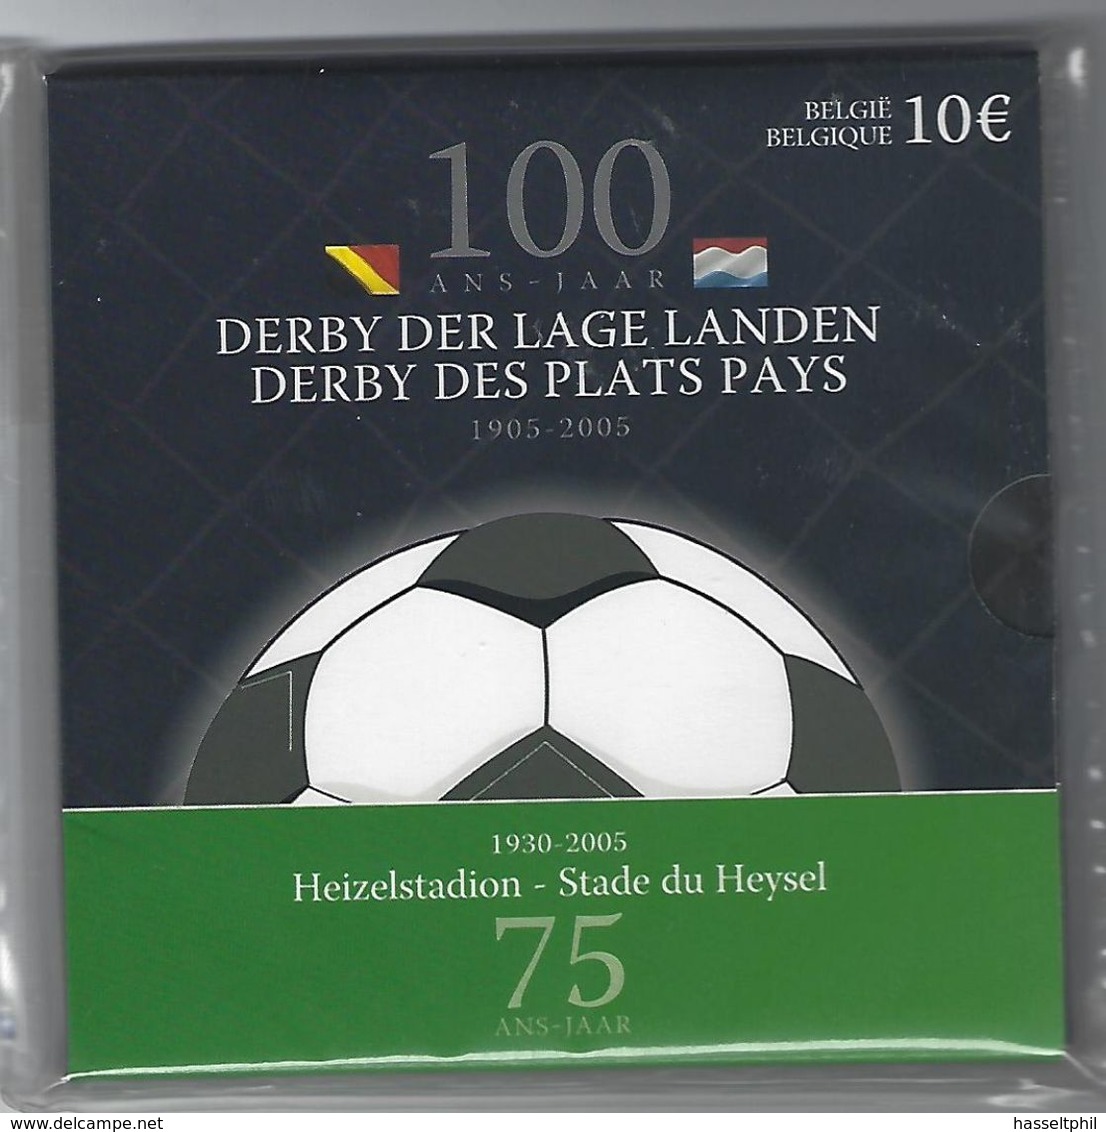 BELGIE -BELGIQUE EUROMUNT 10 Euro 2005  - 100 Jaar Derby Der Lage Landen - Belgium